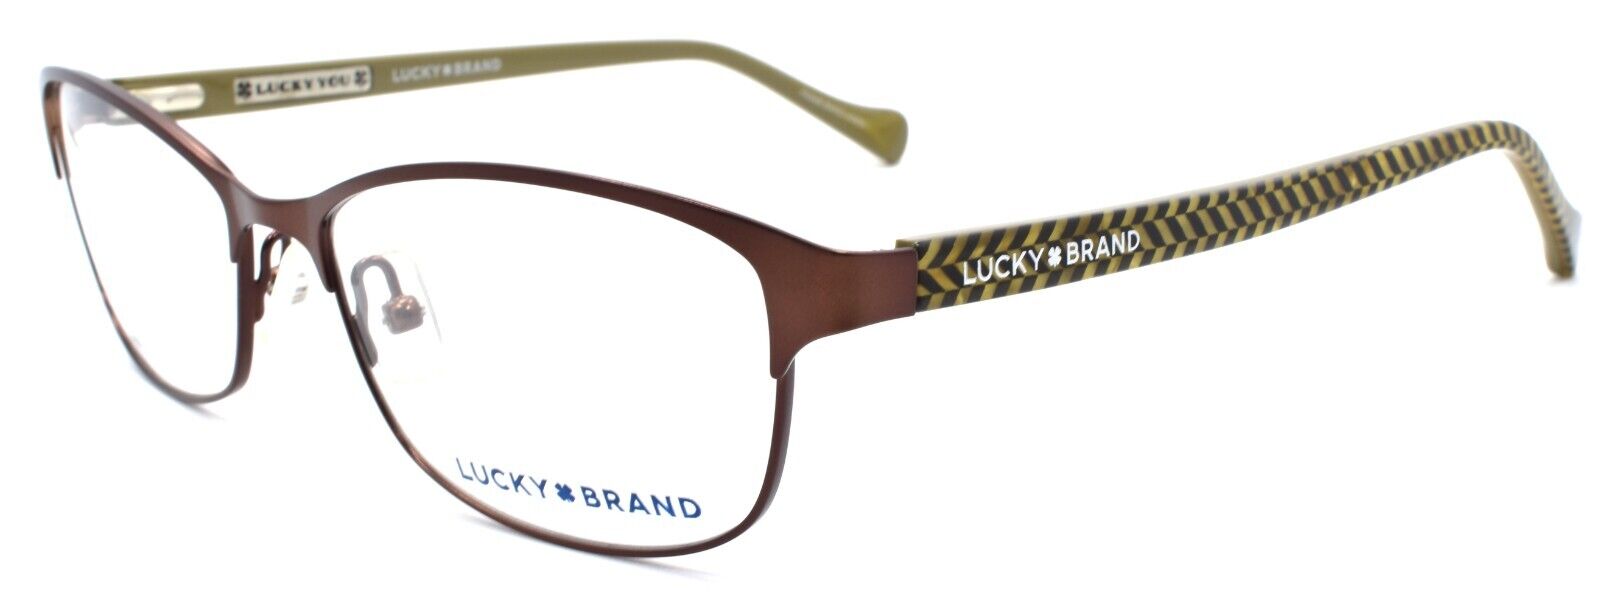 1-LUCKY BRAND D102 Women's Eyeglasses Frames 53-16-135 Brown-751286281668-IKSpecs